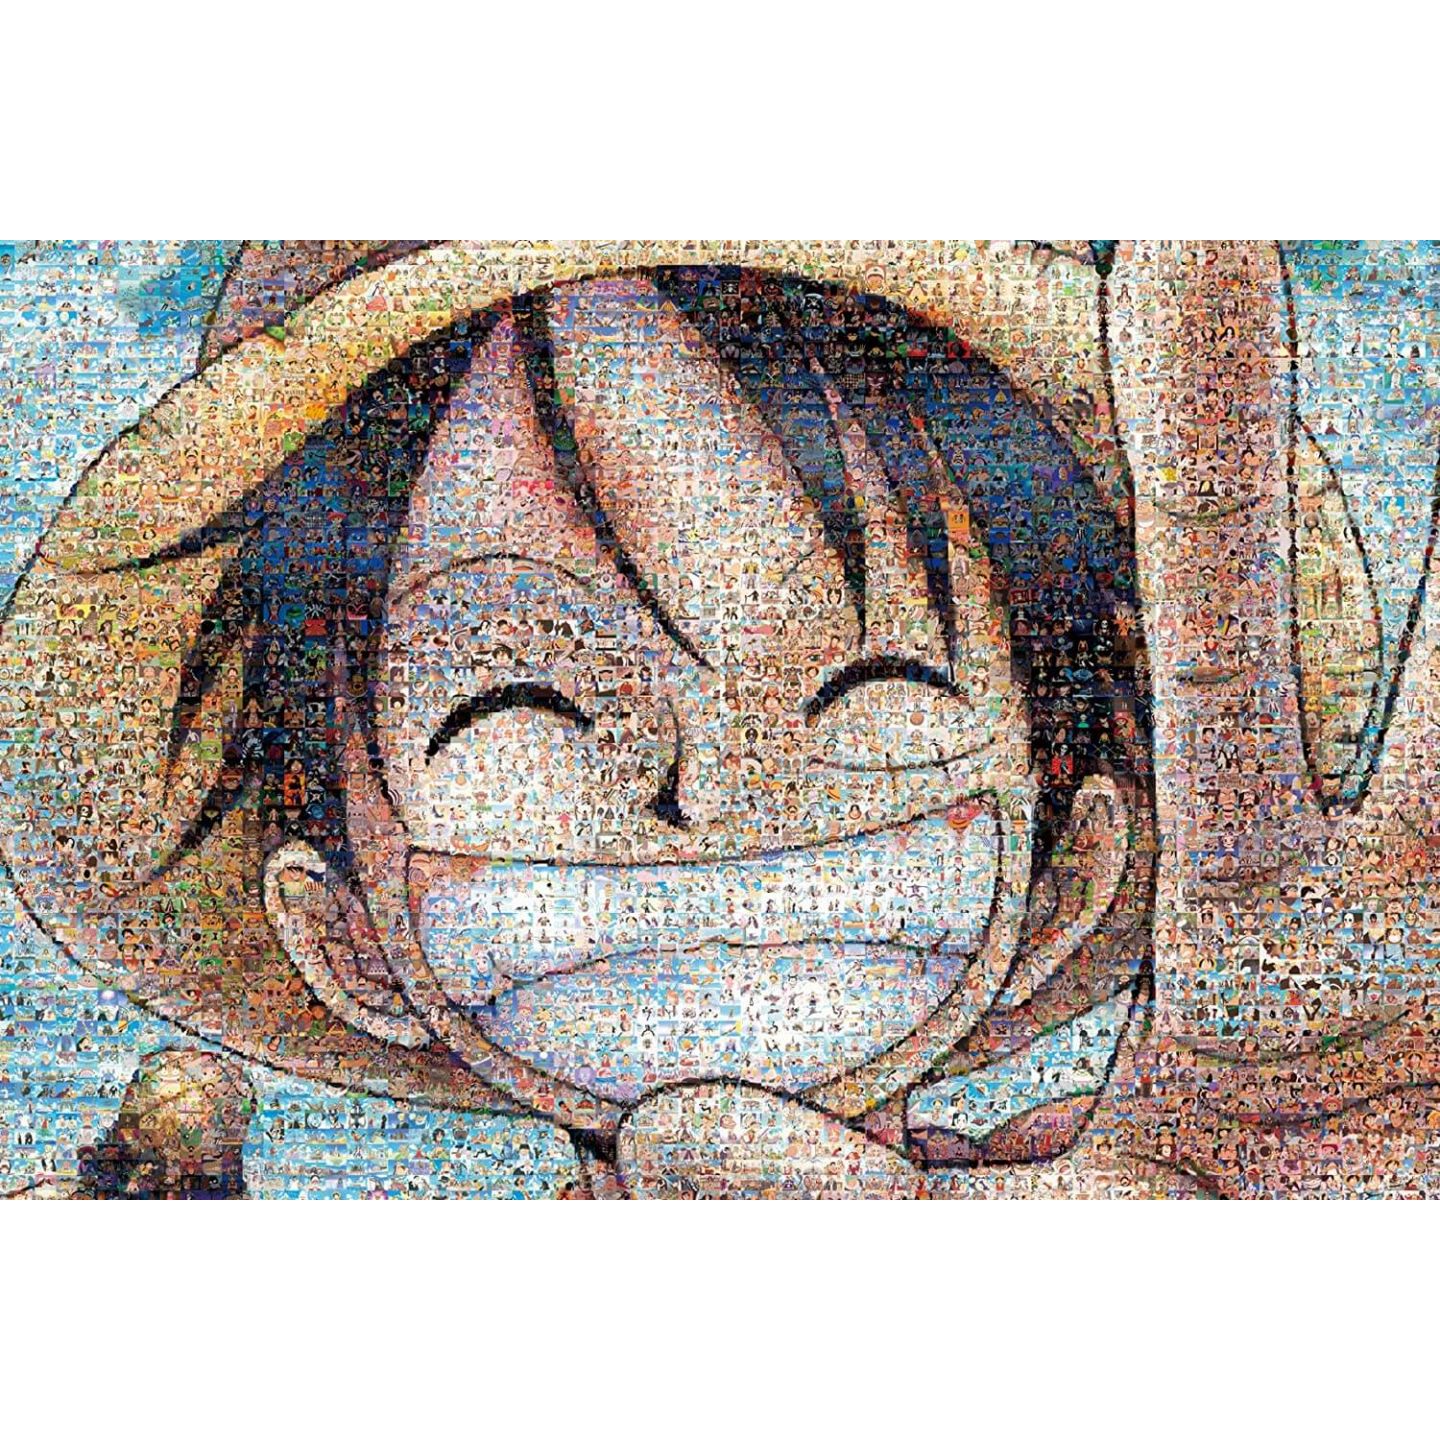 One Piece Luffy 2000 piece jigsaw puzzle Mosaic Art (73x102cm